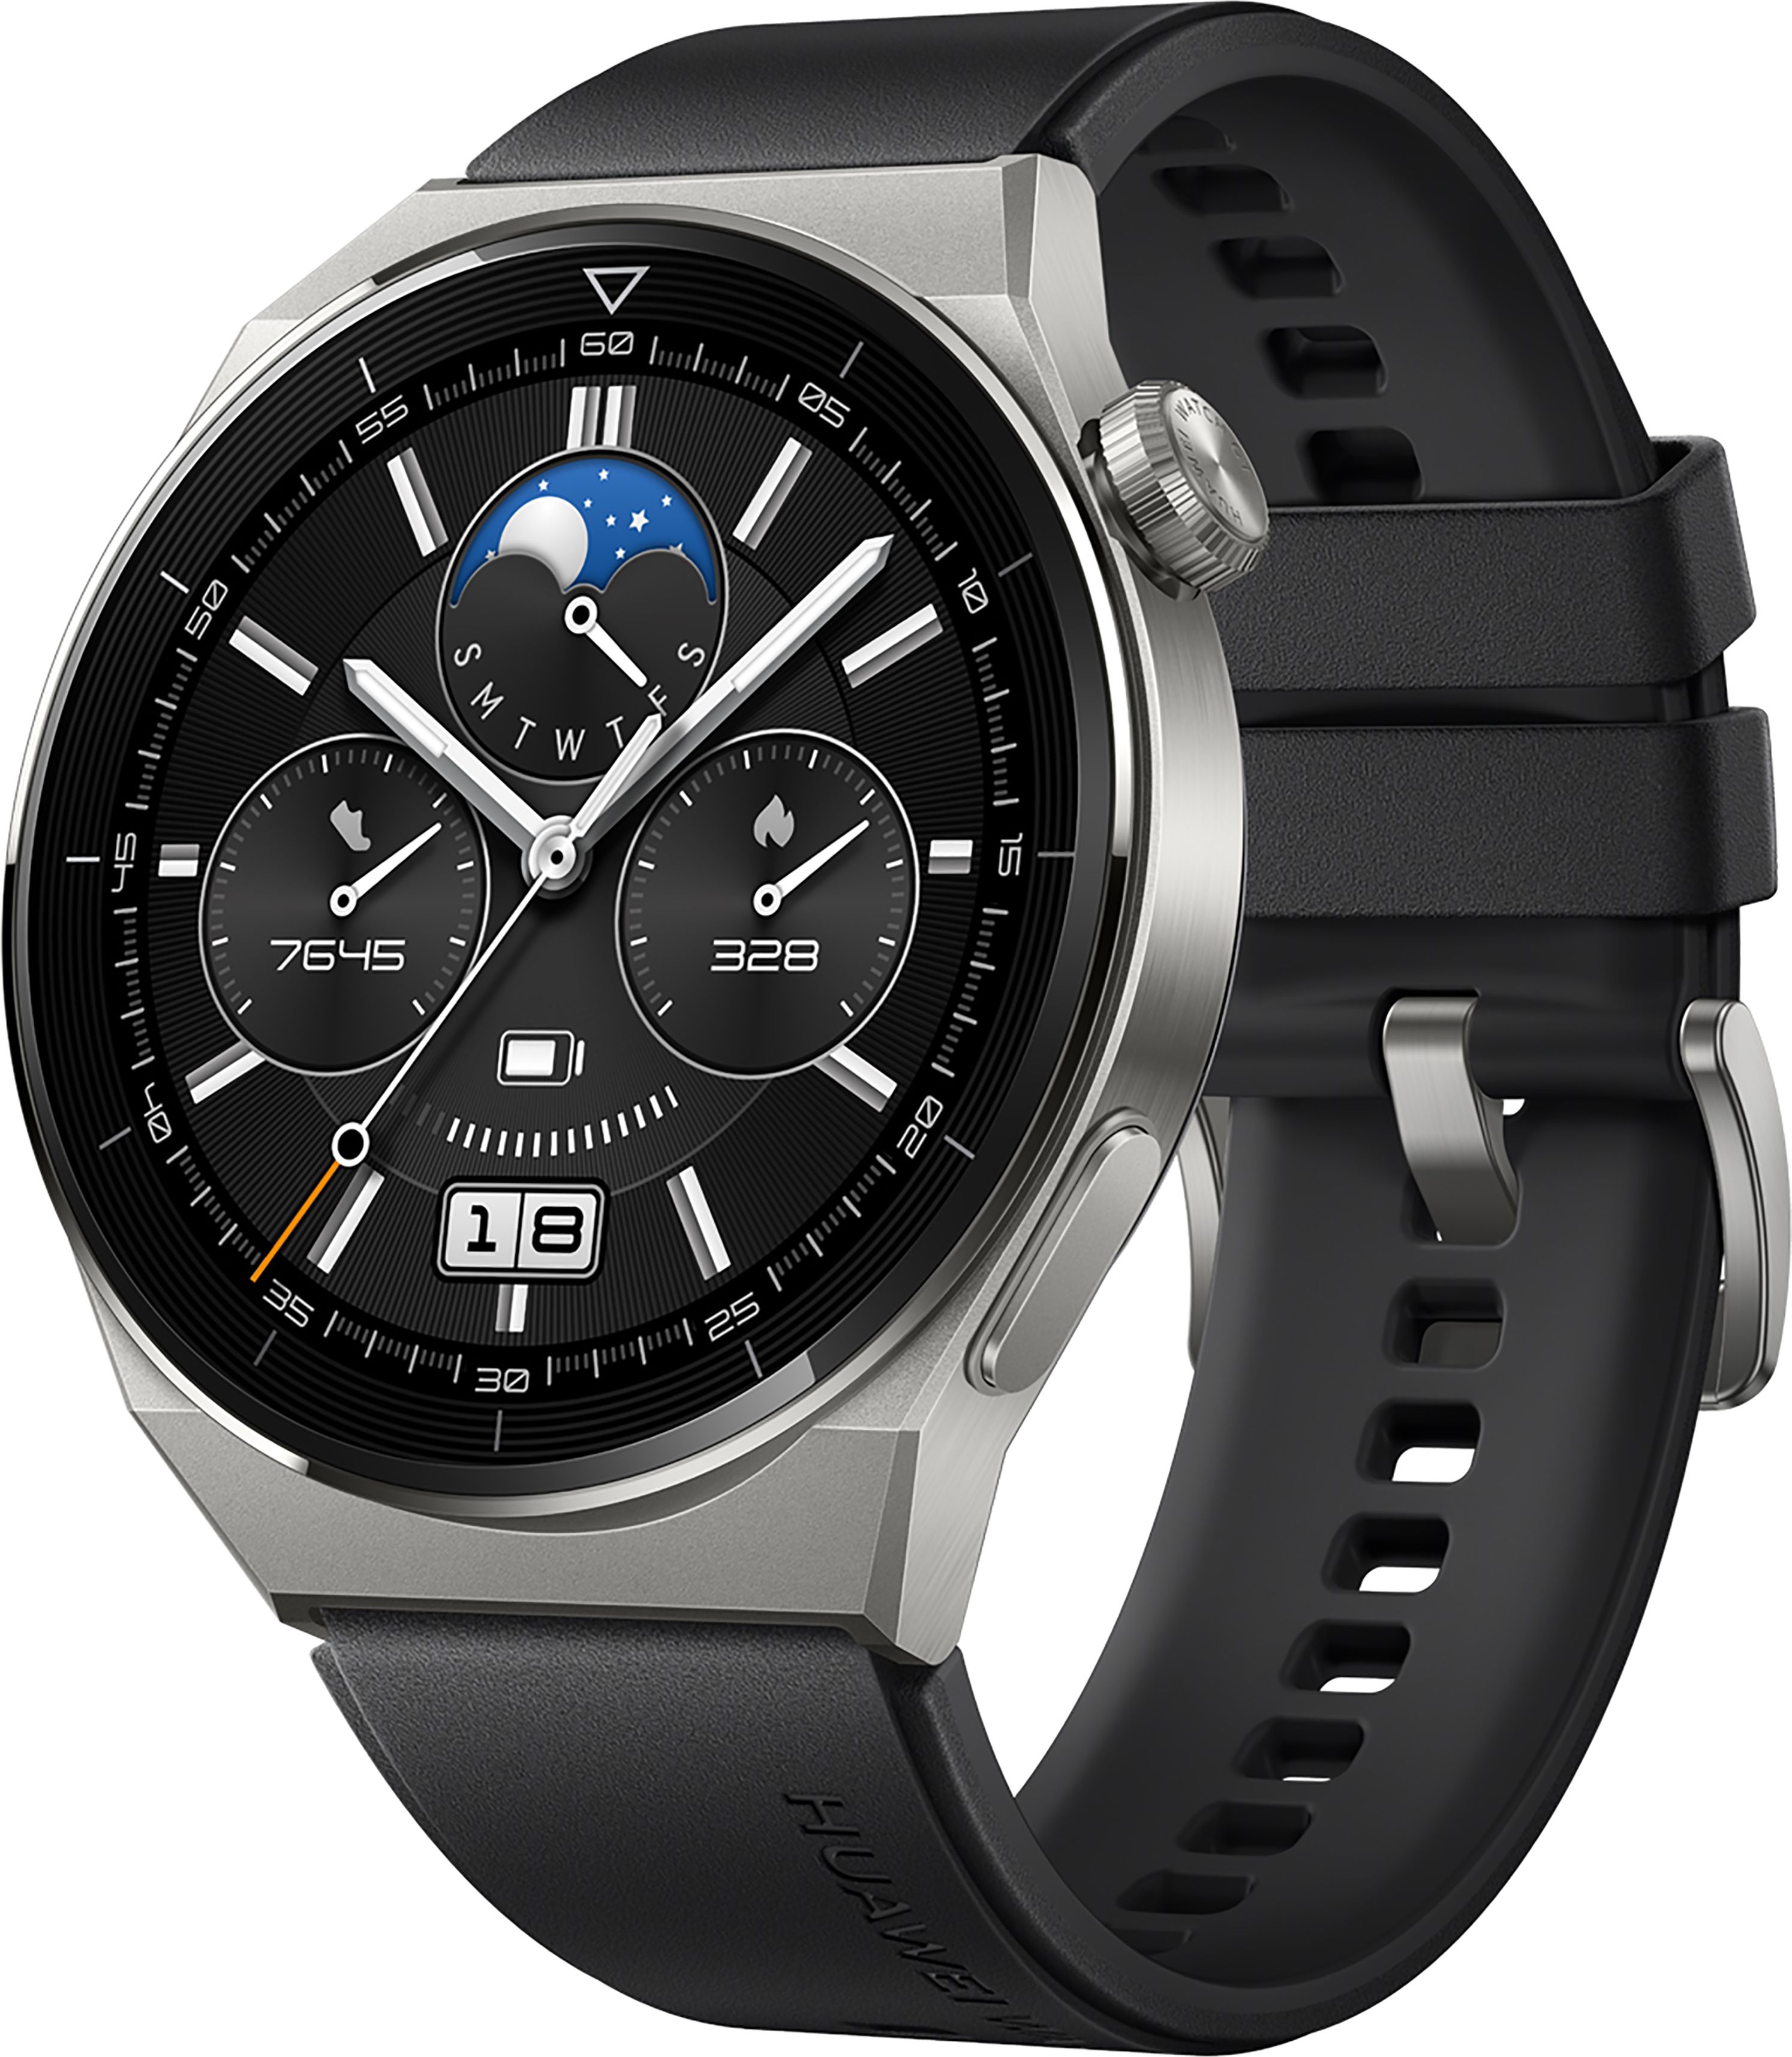 HUAWEI GT 3 Pro Smart Watch - Black Black